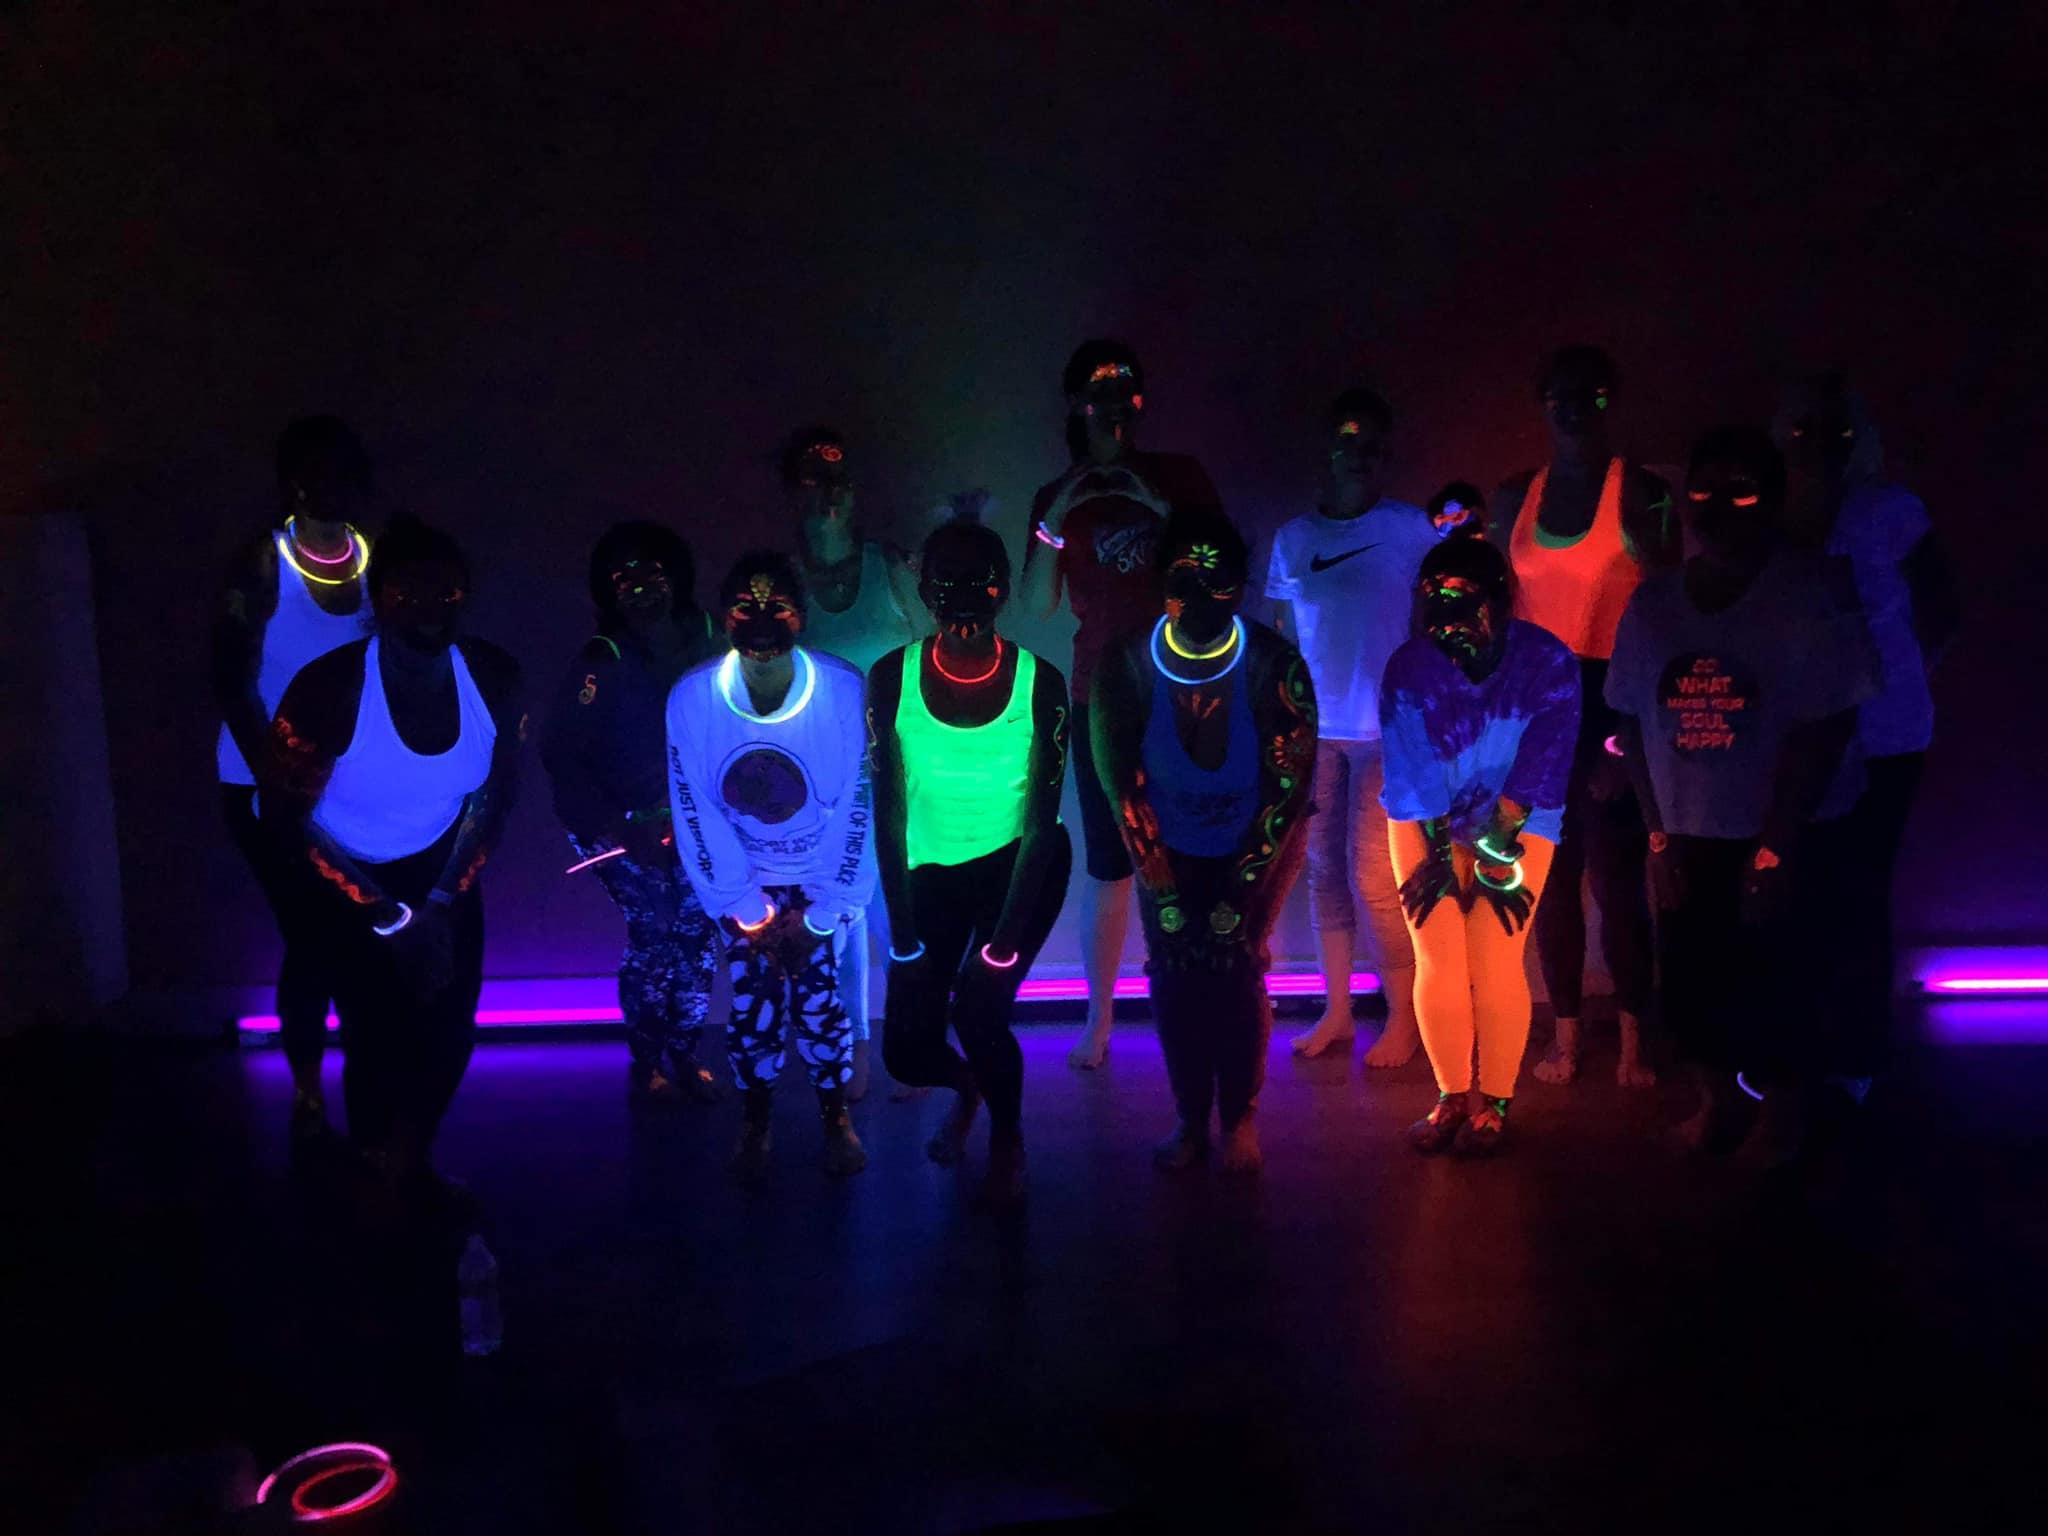 80's Glowga: Glow in the Dark Yoga